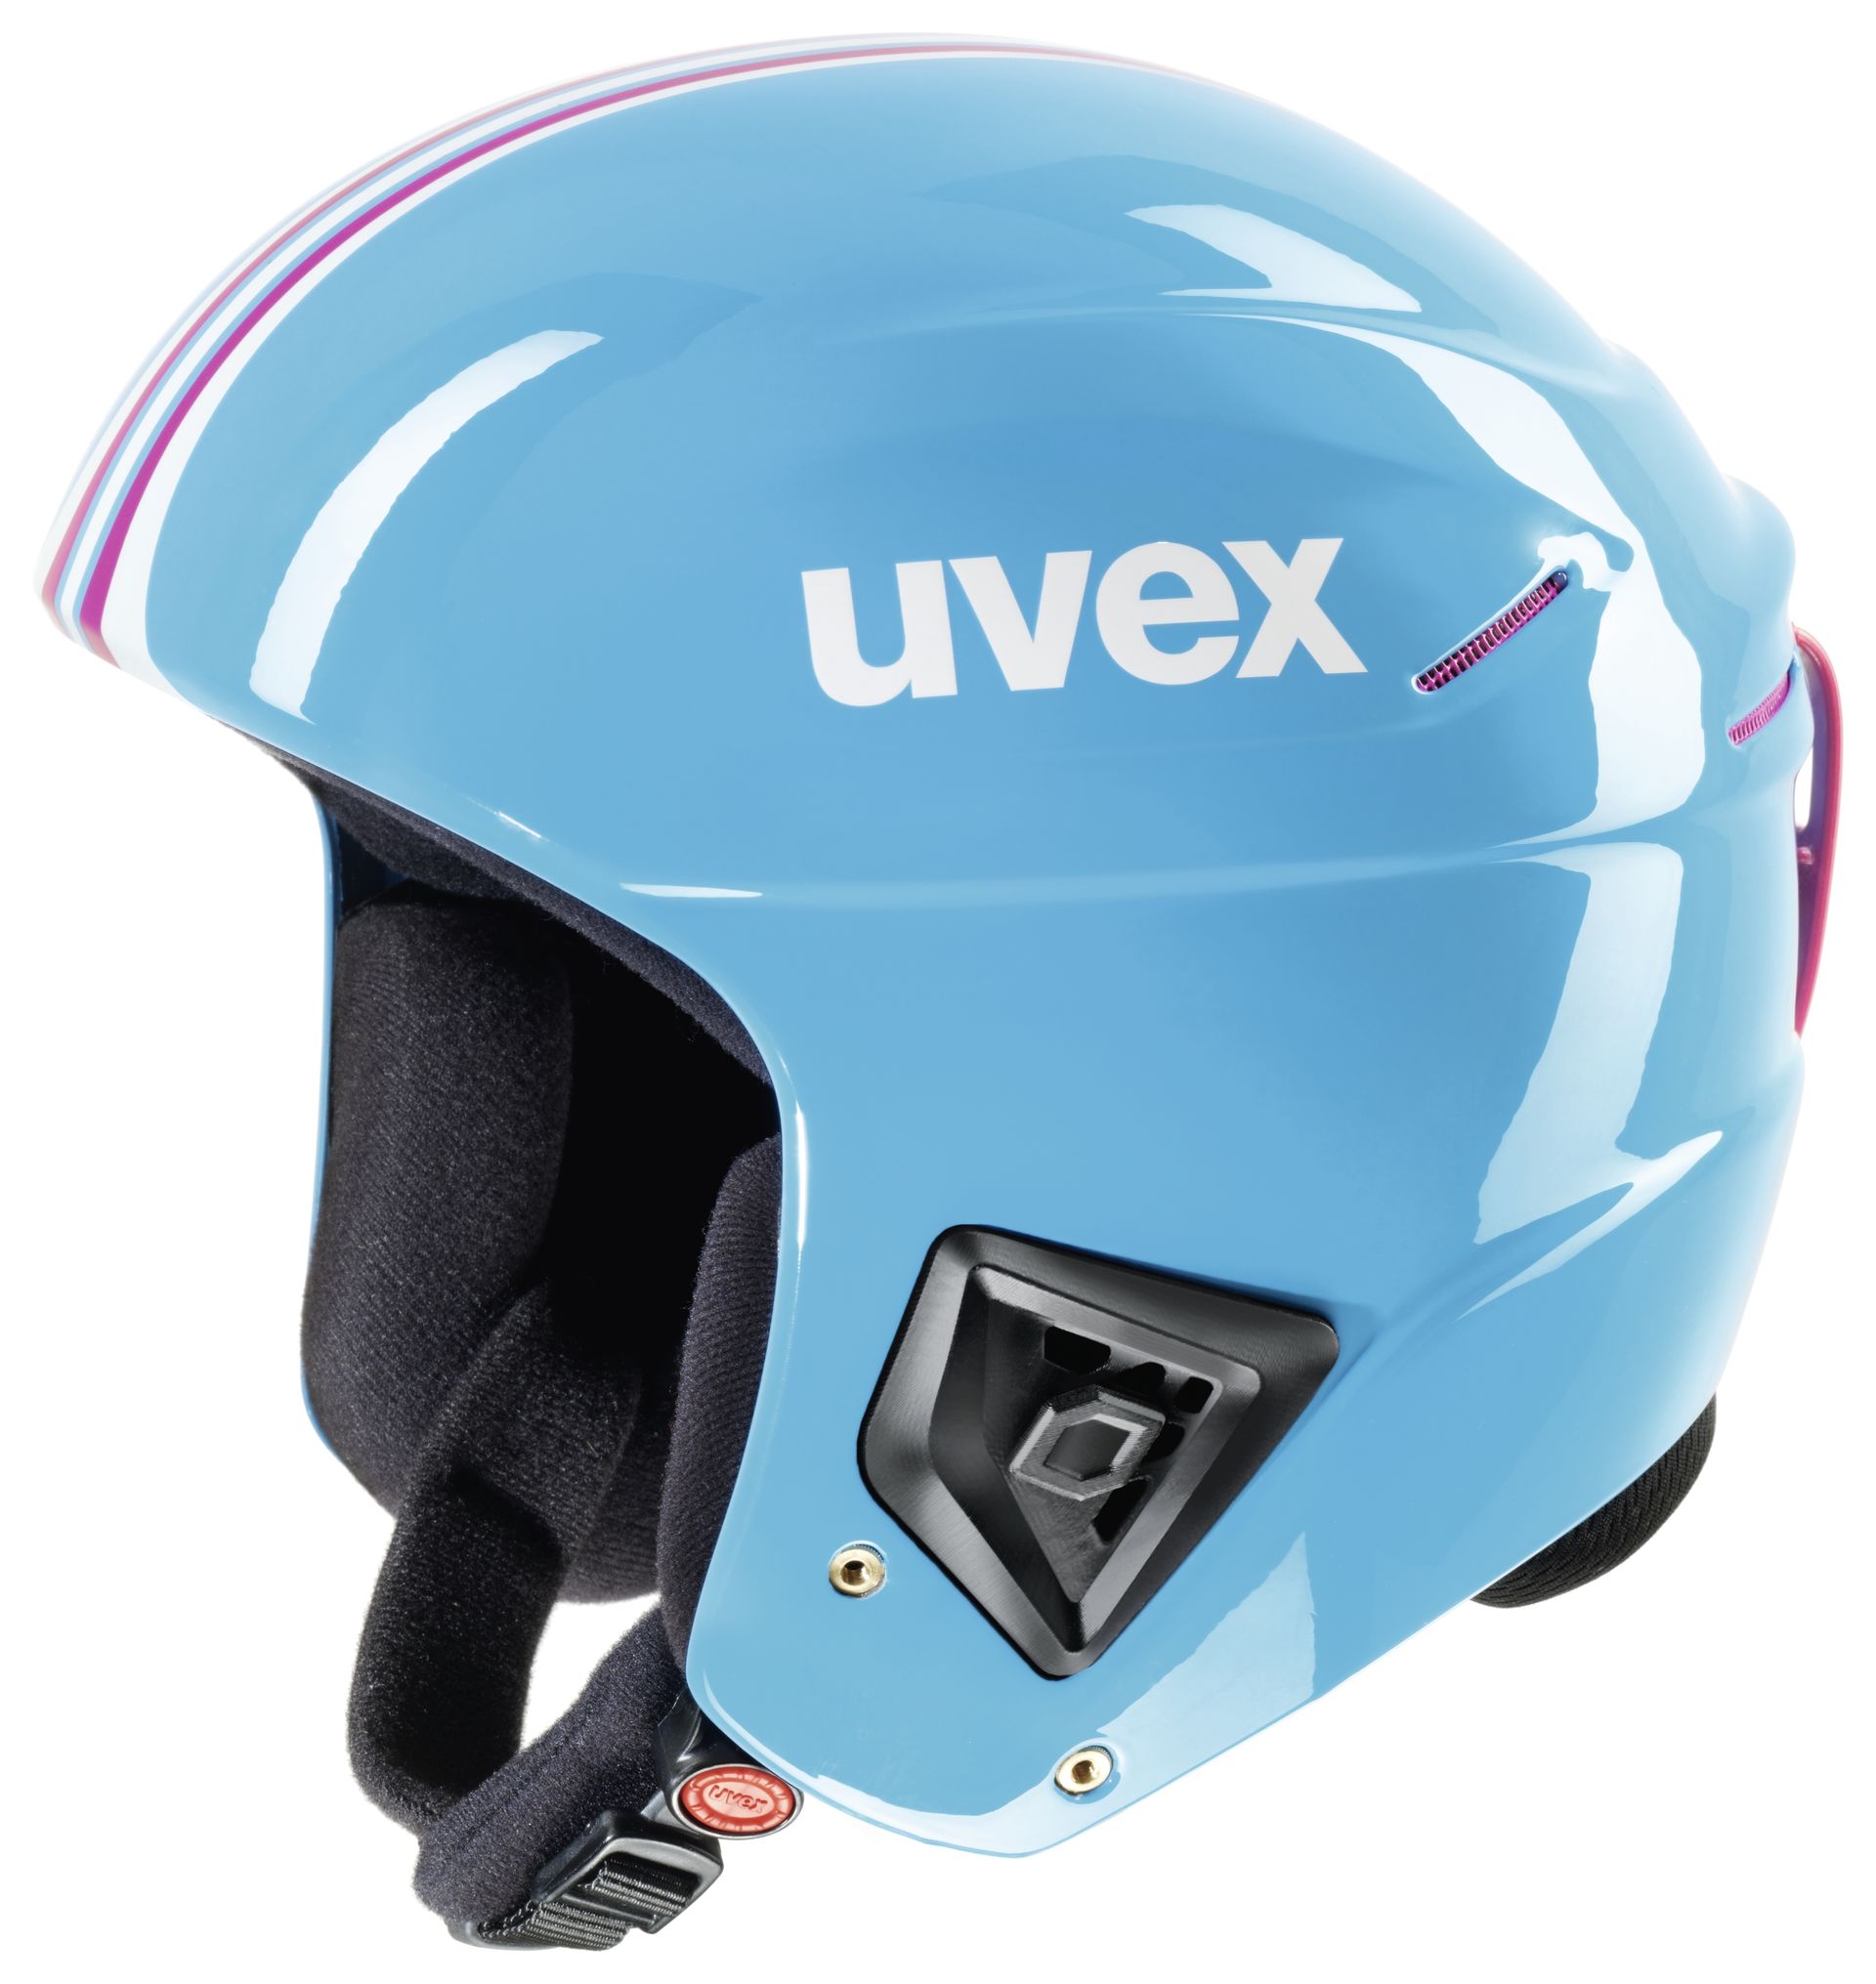 Купить горнолыжный шлем в москве. Шлем Uvex Race+. Горнолыжный шлем Uvex. Uvex Helmets мотошлем. Шлем Uvex горнолыжный Fis.